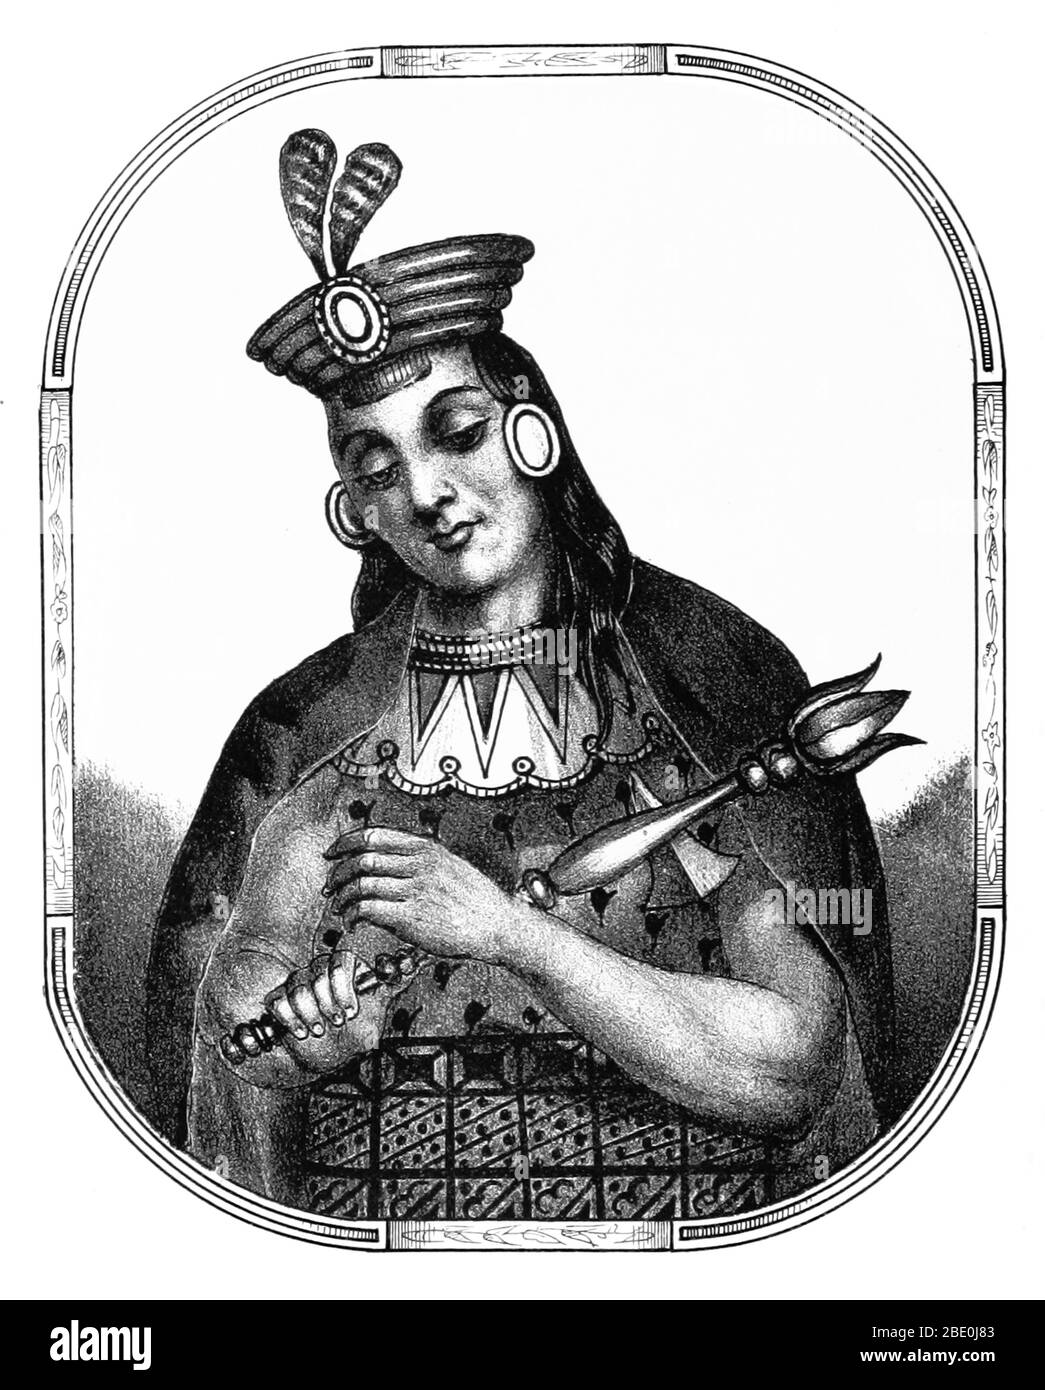 Yawar Waqaq fu la settima Sapa Inca del Regno di Cuzco (inizio intorno al 1380) e la seconda della dinastia Hanan. Il suo nome si riferisce ad una storia che fu rapito come bambino dall'Ayarmaca Sinchi Tocay Ccapac, piangendo lacrime di sangue sulla sua situazione. Alla fine fuggì con l'aiuto di uno degli abiti del suo captatore, Chimpu ORMA. Assumendo il regno all'età di 19 anni, Yawar conquistò Pillauya, Choyca, Yuco, Chilincay, Taocamarca e Cavinas. Immagine tratta da pagina 72 di 'Recuerdos de la Monarquia Peruana, ó boshijo de la historia de los Incas, ecc' di Justo Sahuaraura, 1850. Foto Stock